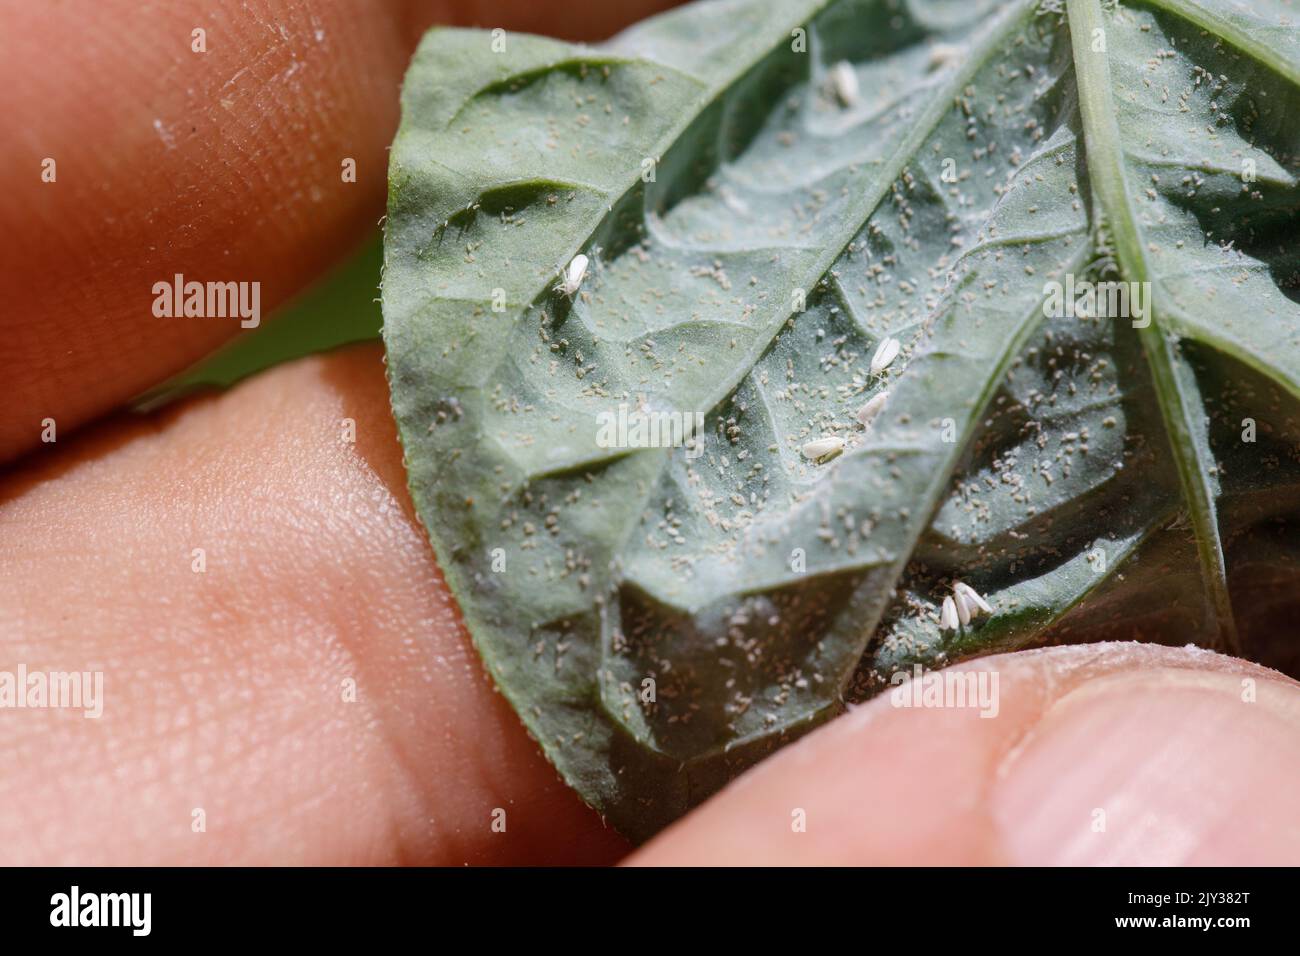 Insetti parassiti, afide, sui germogli e frutti di piante, Spider acaro sui fiori. Pepato foglie attaccate da insetti maligni. Foto Stock